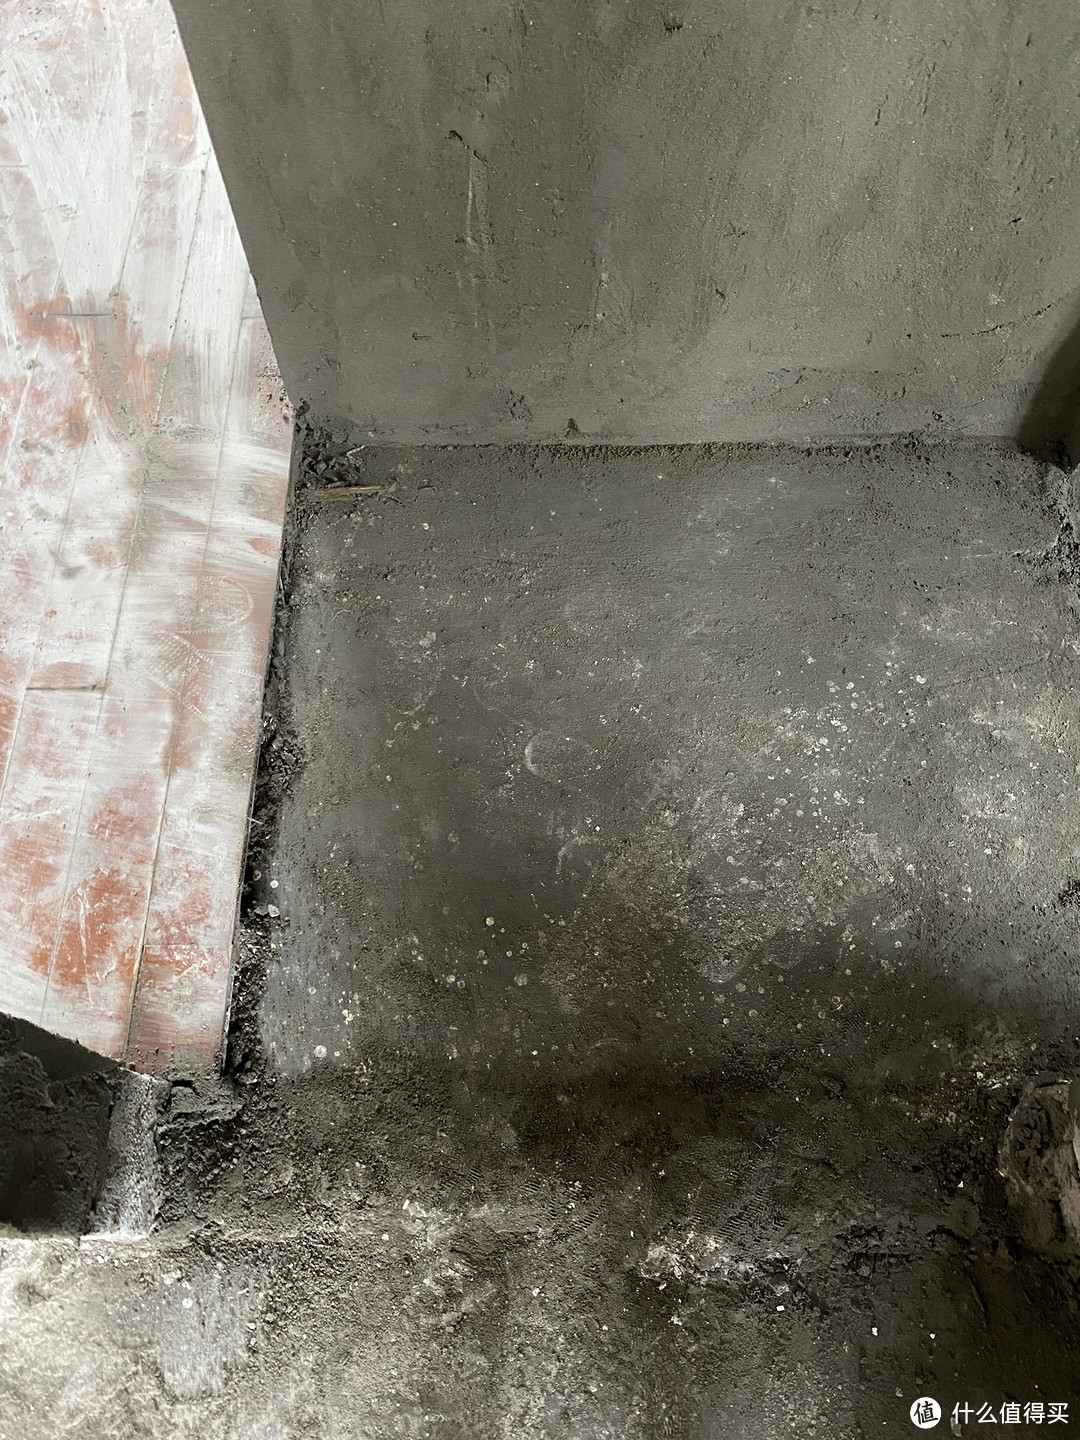 卫生间改门口处的地板部分拆旧，原先水泥处都是地板，现在做了切割拆除